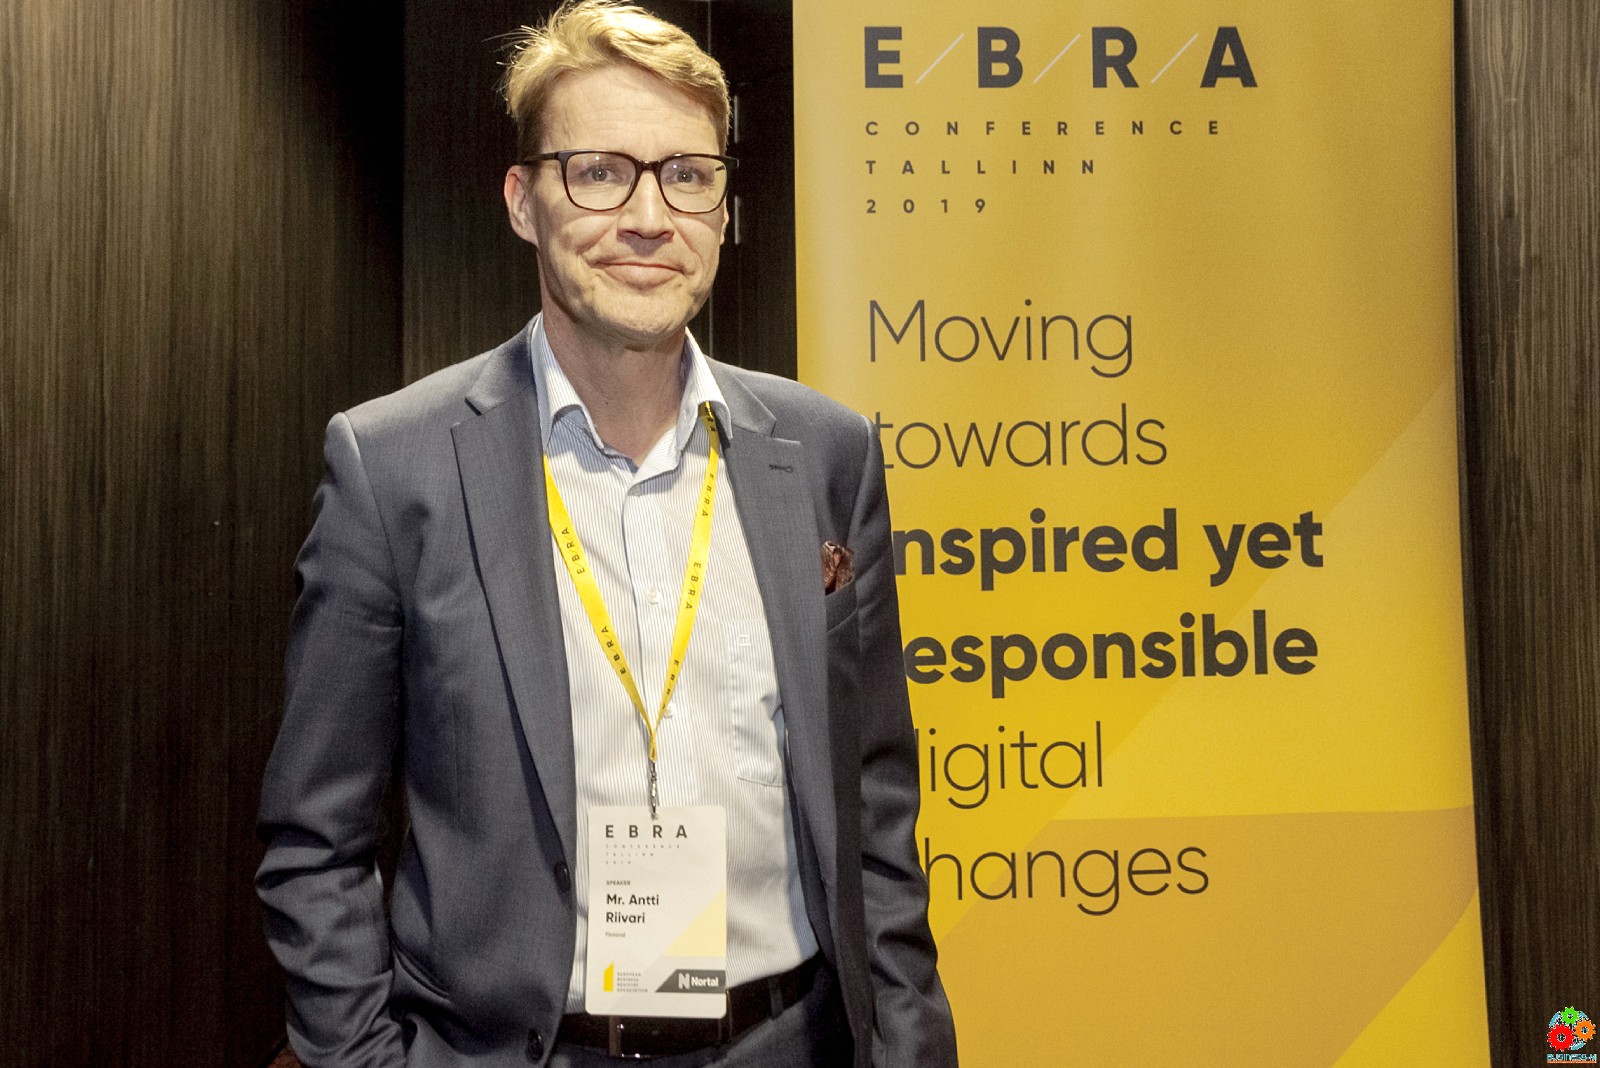 EBRA-2019: в Таллинне проходит конференция Ассоциации европейских бизнес регистраторов